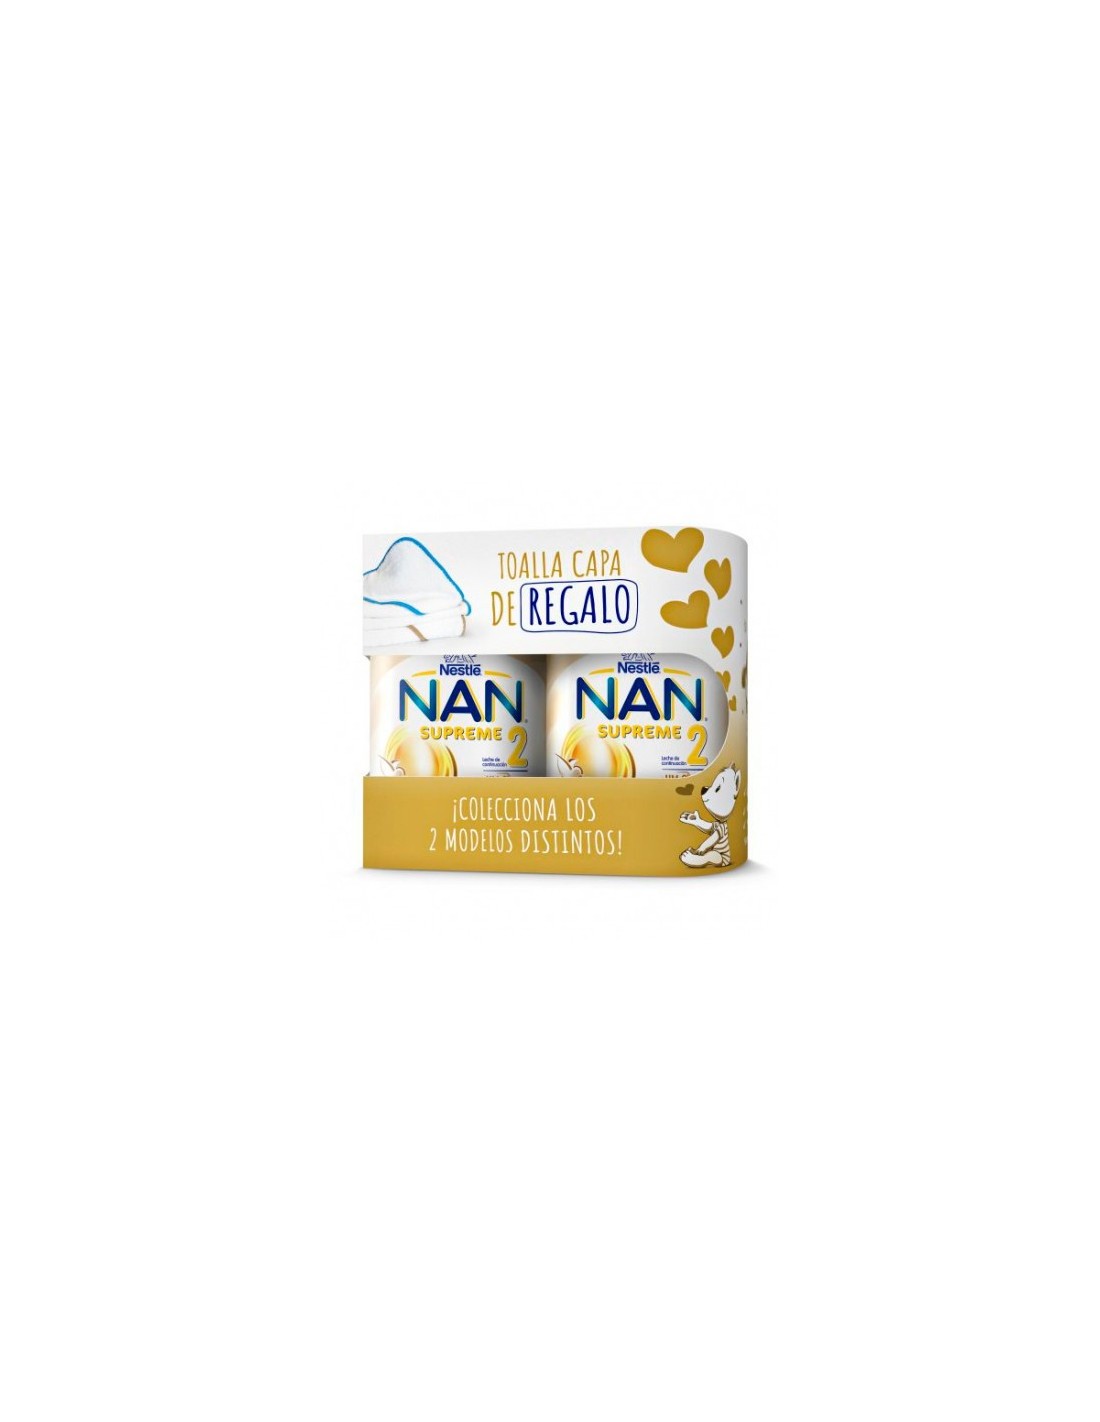 Nestlé Nan Supreme 2 + Toalla de Regalo Pack 2x800gr